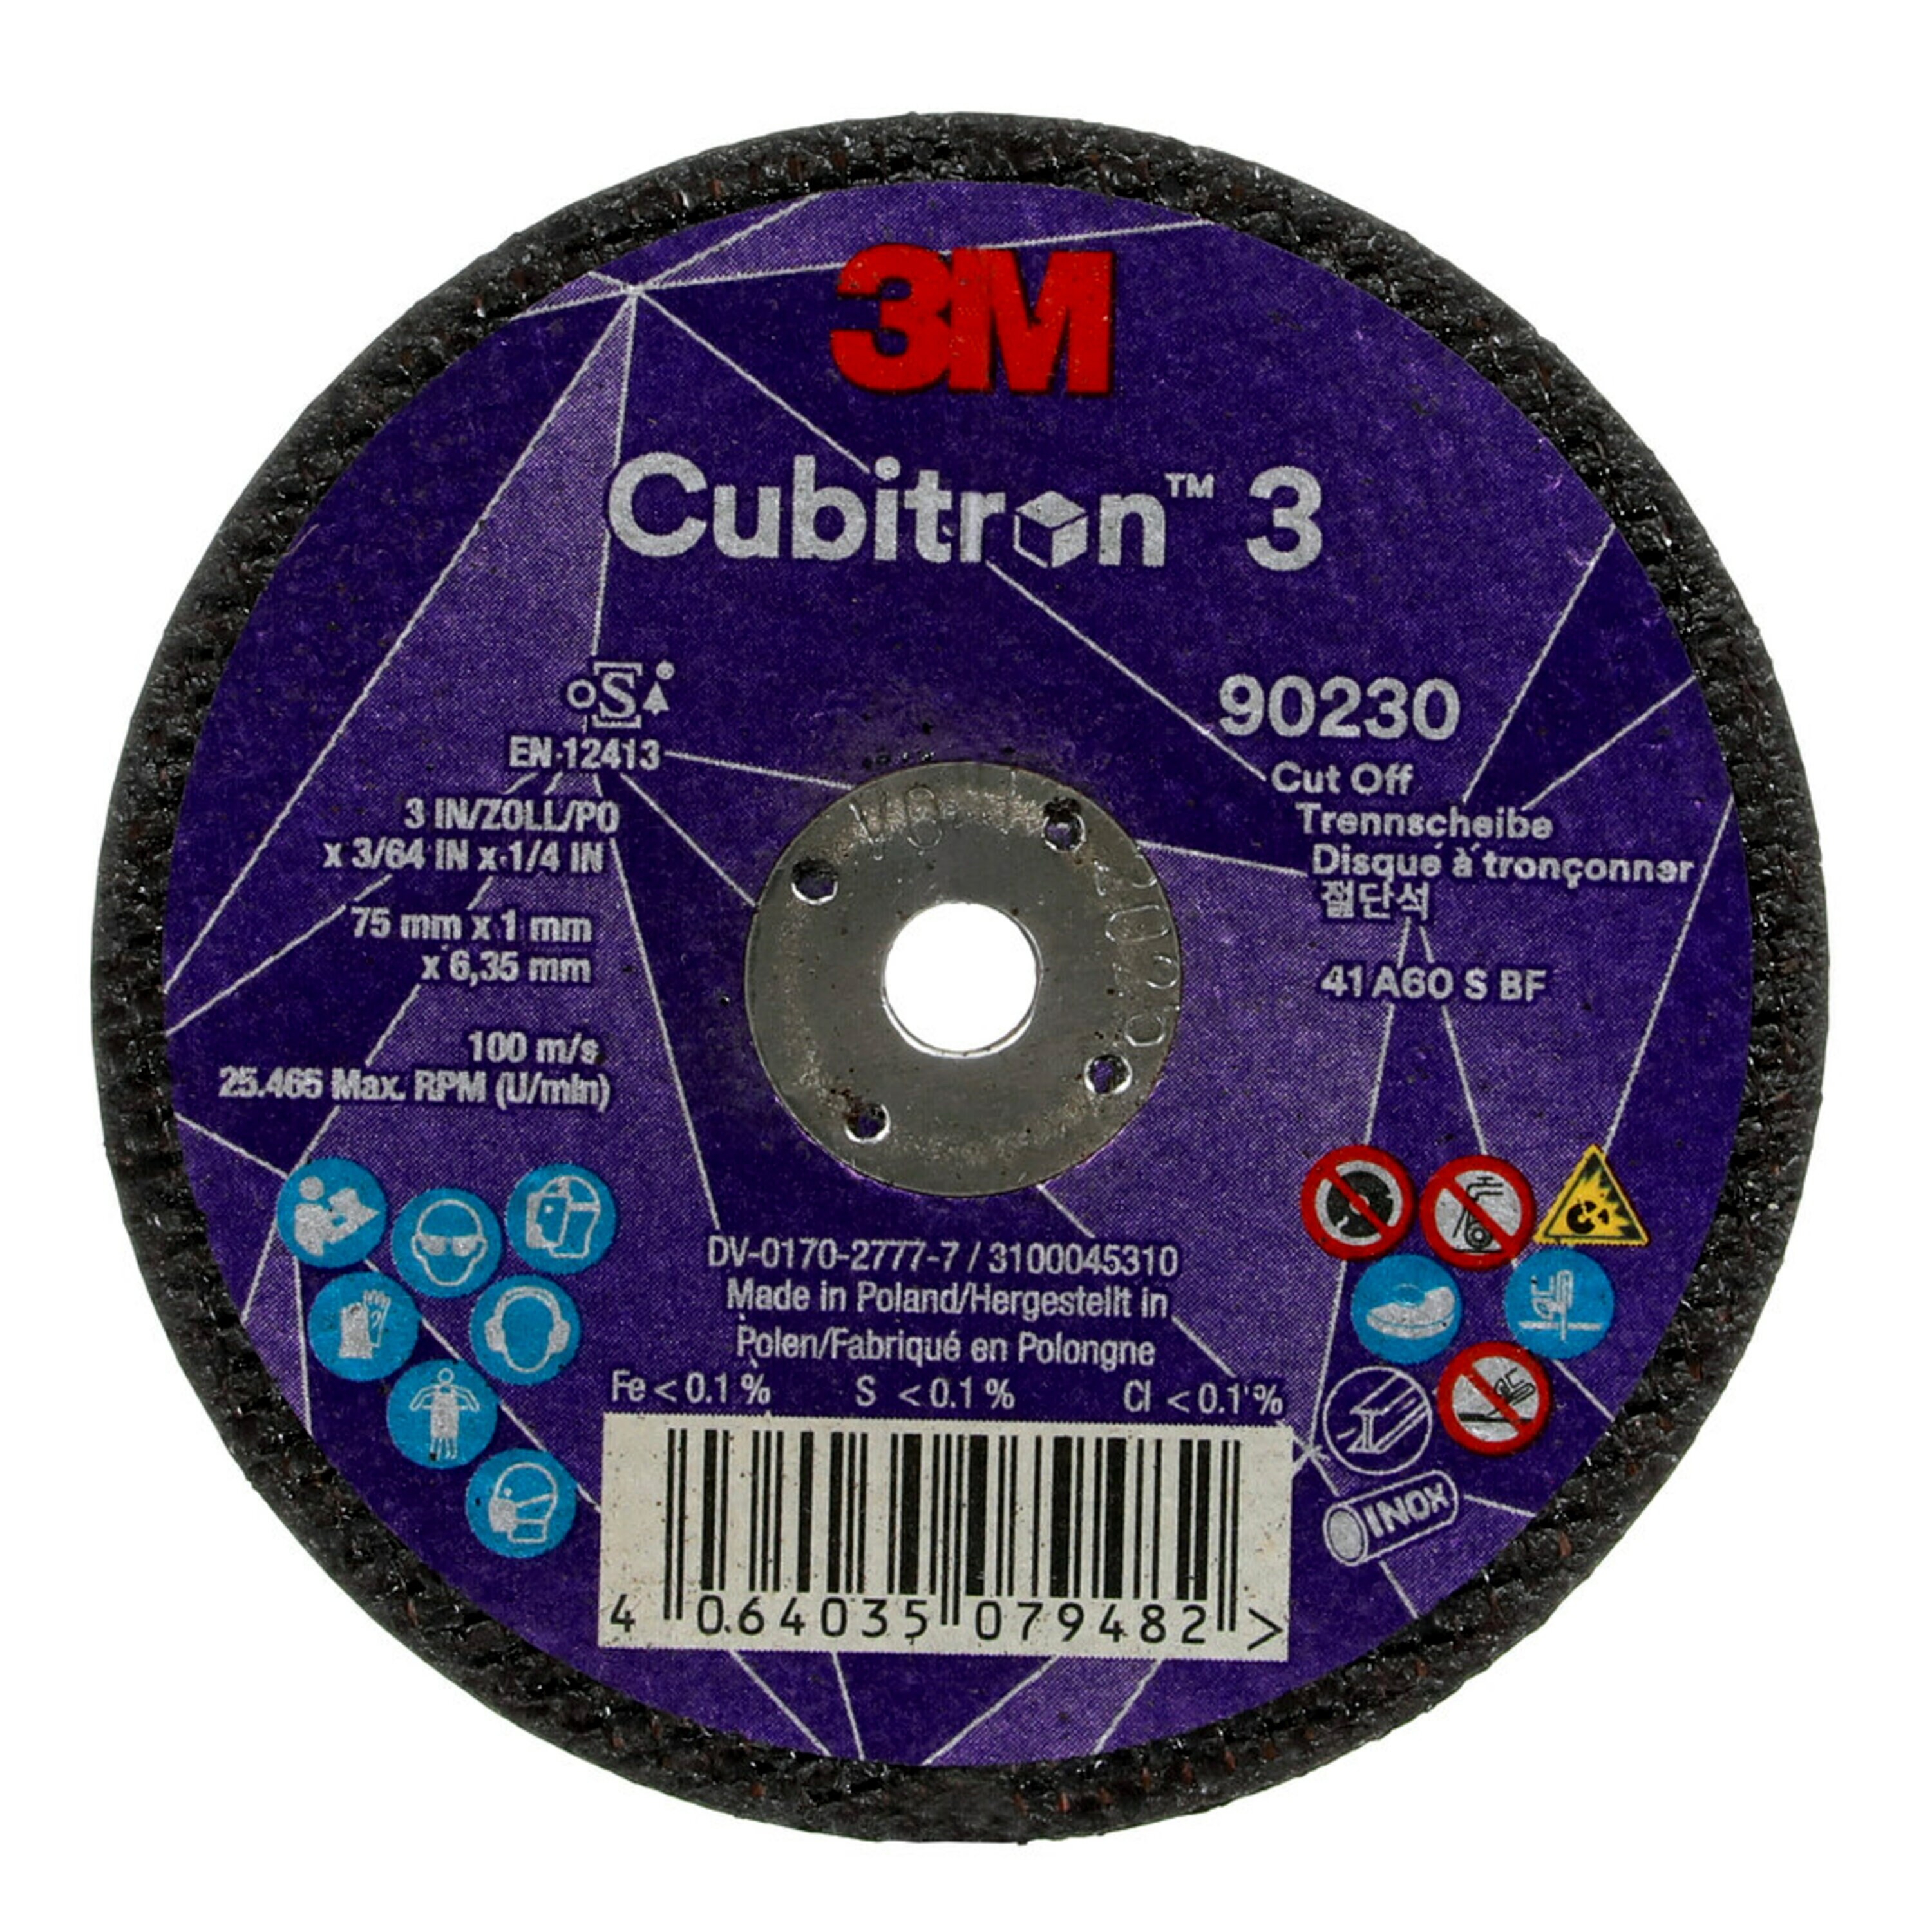 Disco de corte 3M Cubitron 3, 75 mm, 1 mm, 6,35 mm, 60 , tipo 41 #90230